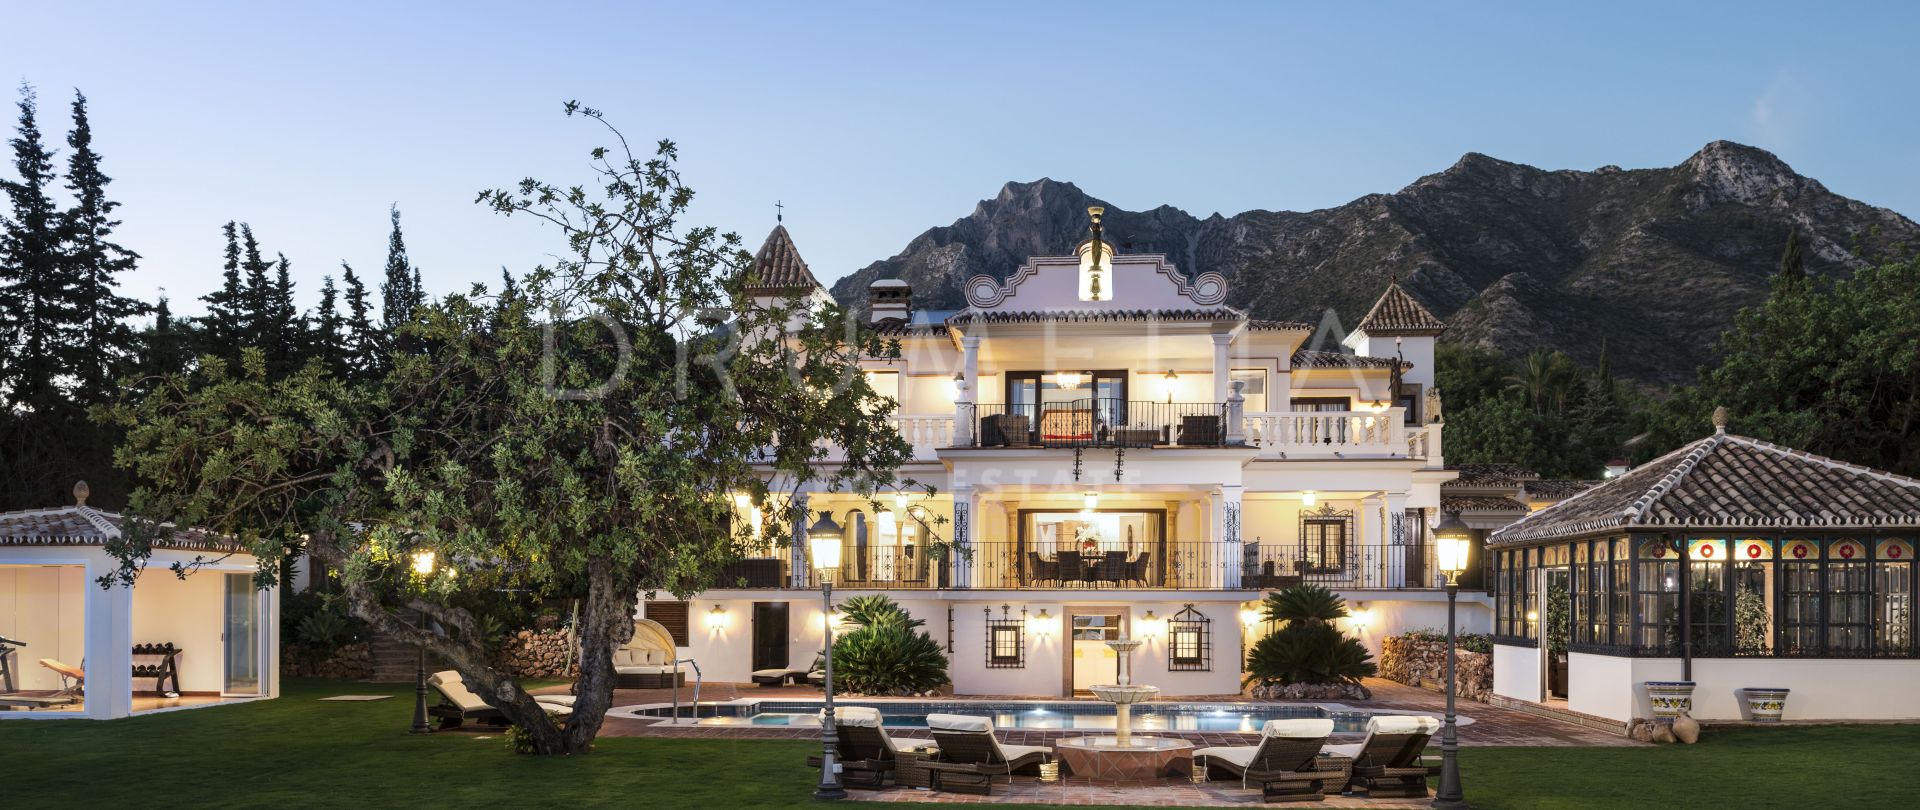 Außergewöhnliche Luxusvilla, die Zukunft und Vergangenheit verbindet, Sierra Blanca, Marbella